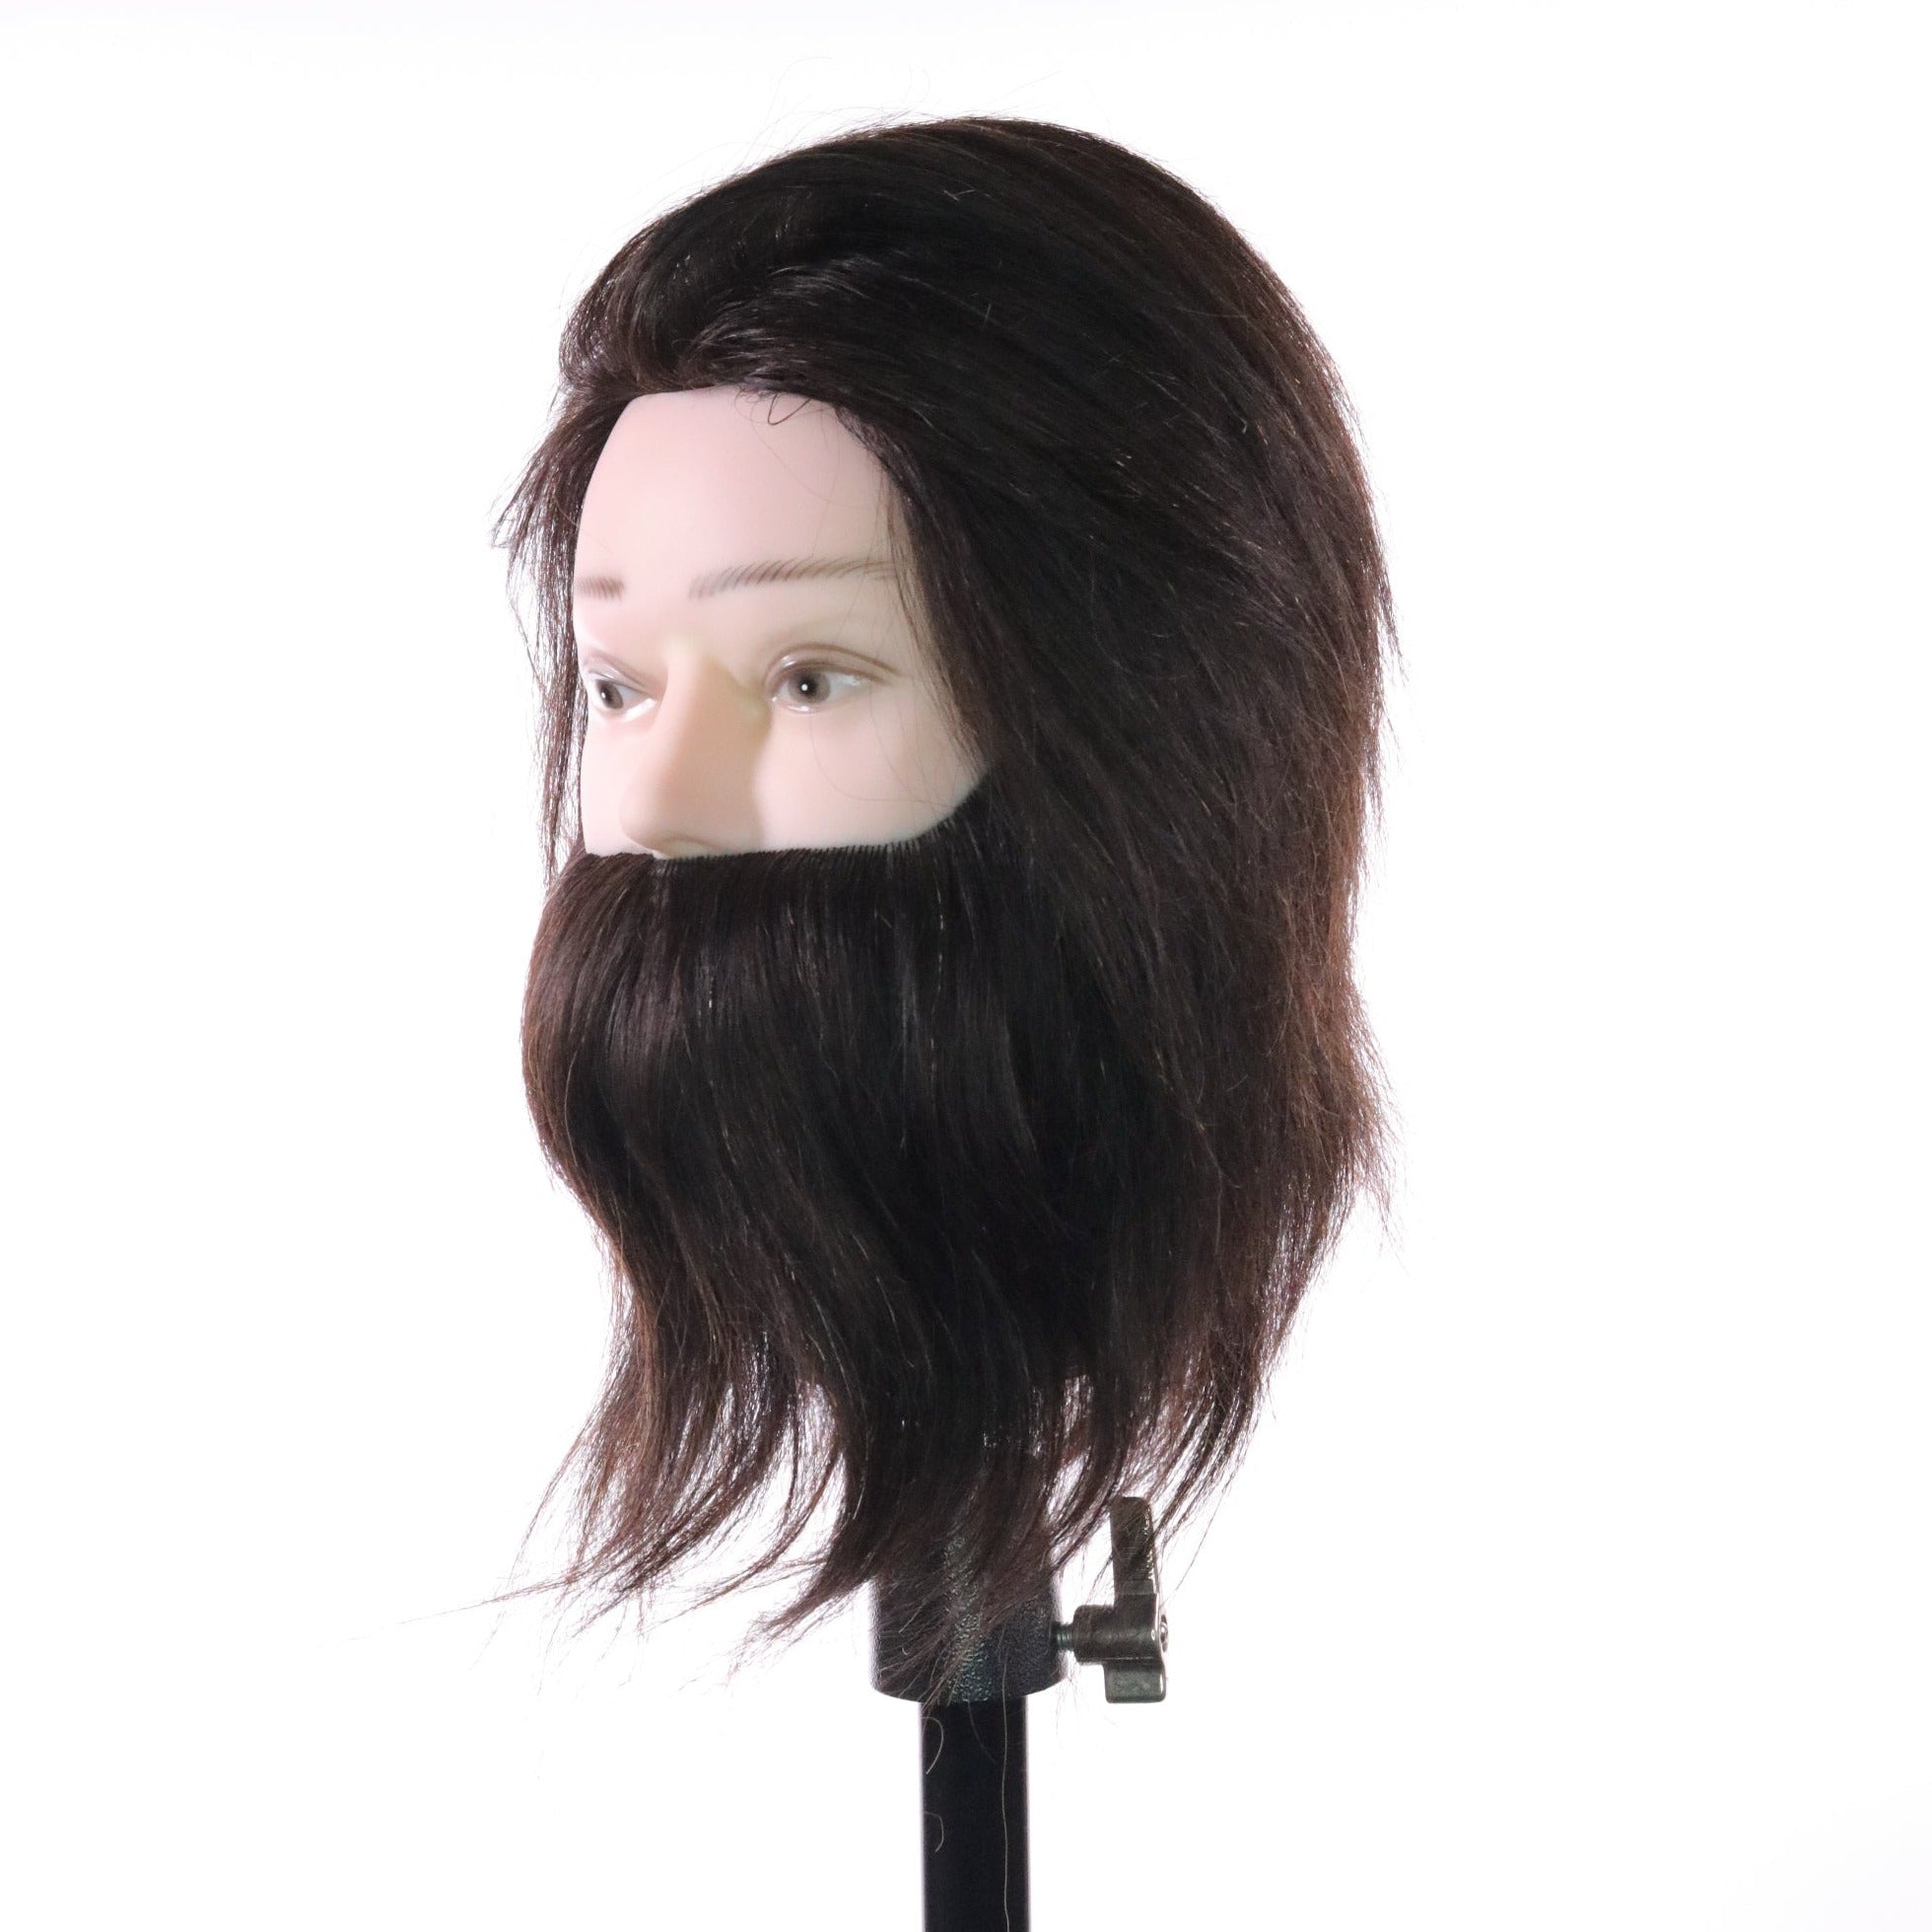 Abe [100% Human Hair Mannequin] HairArt Int'l Inc.